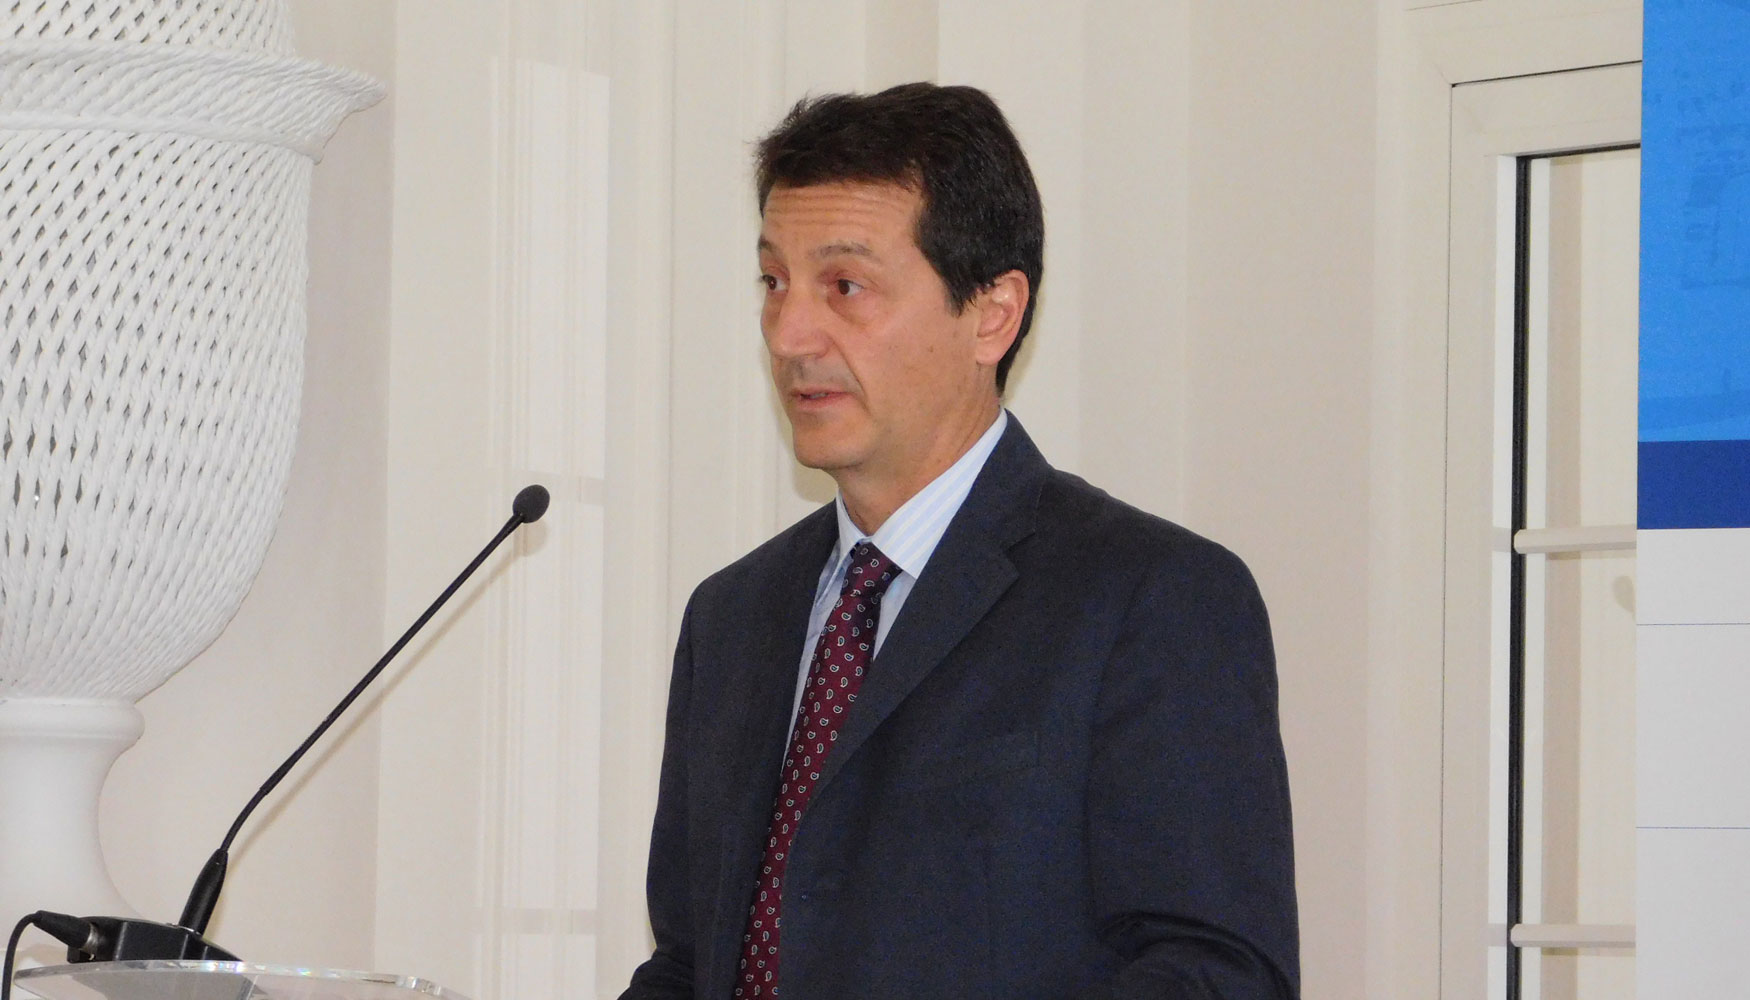 Jos Antonio Delgado-Echage Sell, jefe del rea de Seguridad Industrial del Ministerio de Industria, Comercio y Turismo...